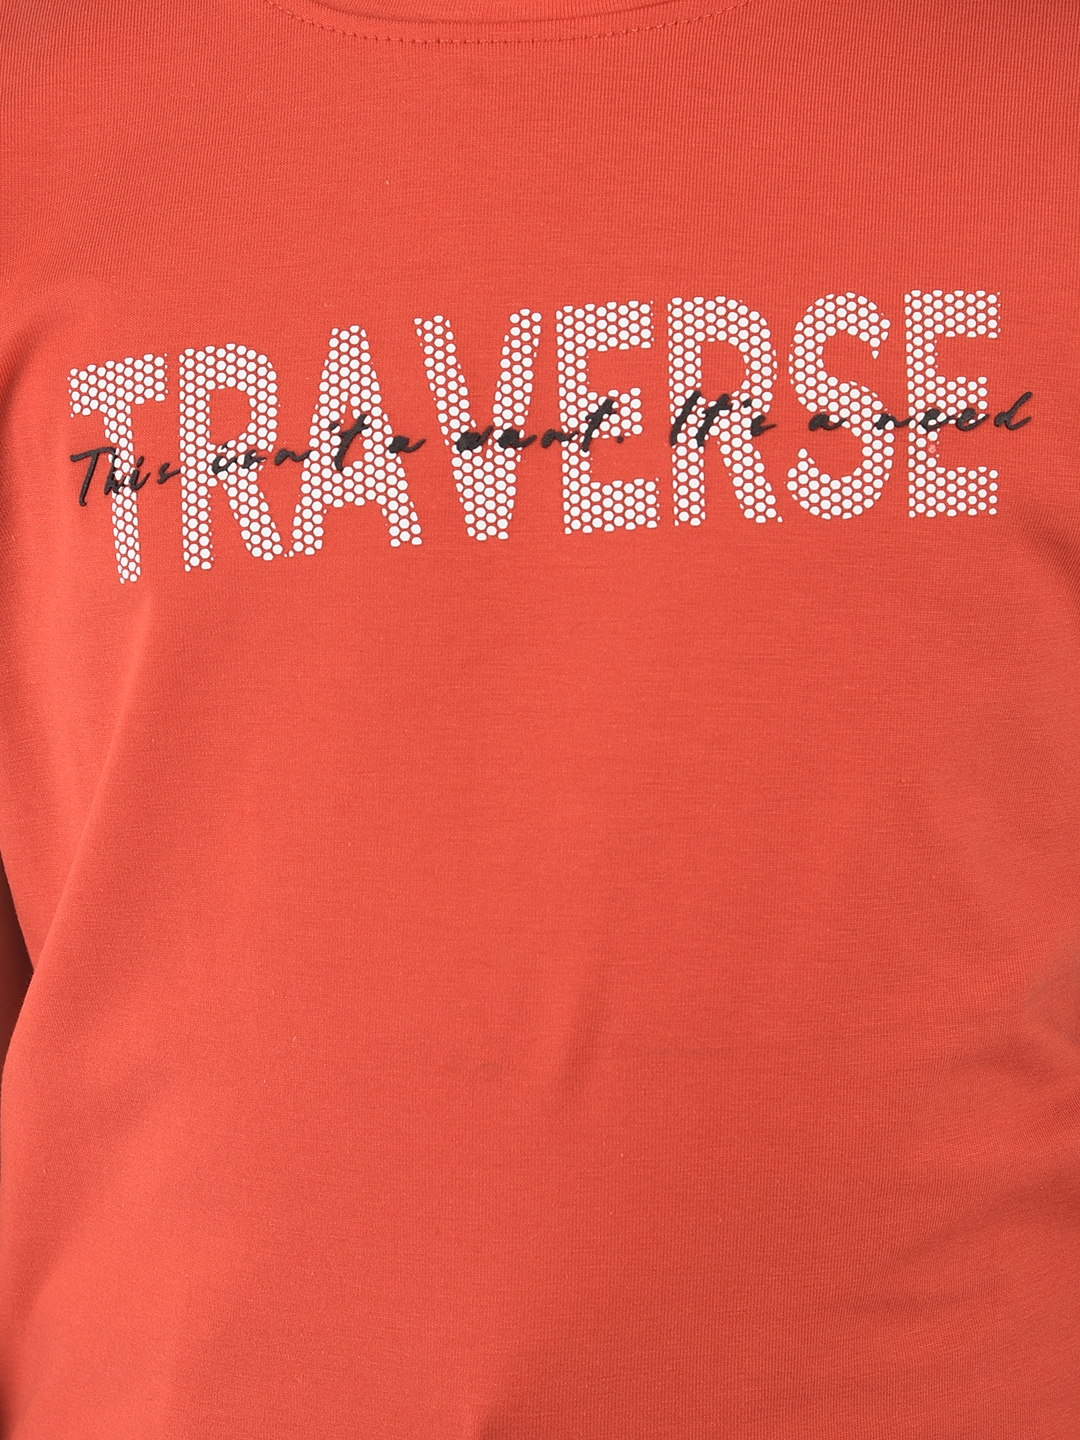 Crimsoune Club | Crimsoune Club Sunrise Orange Typographic T-shirt 5